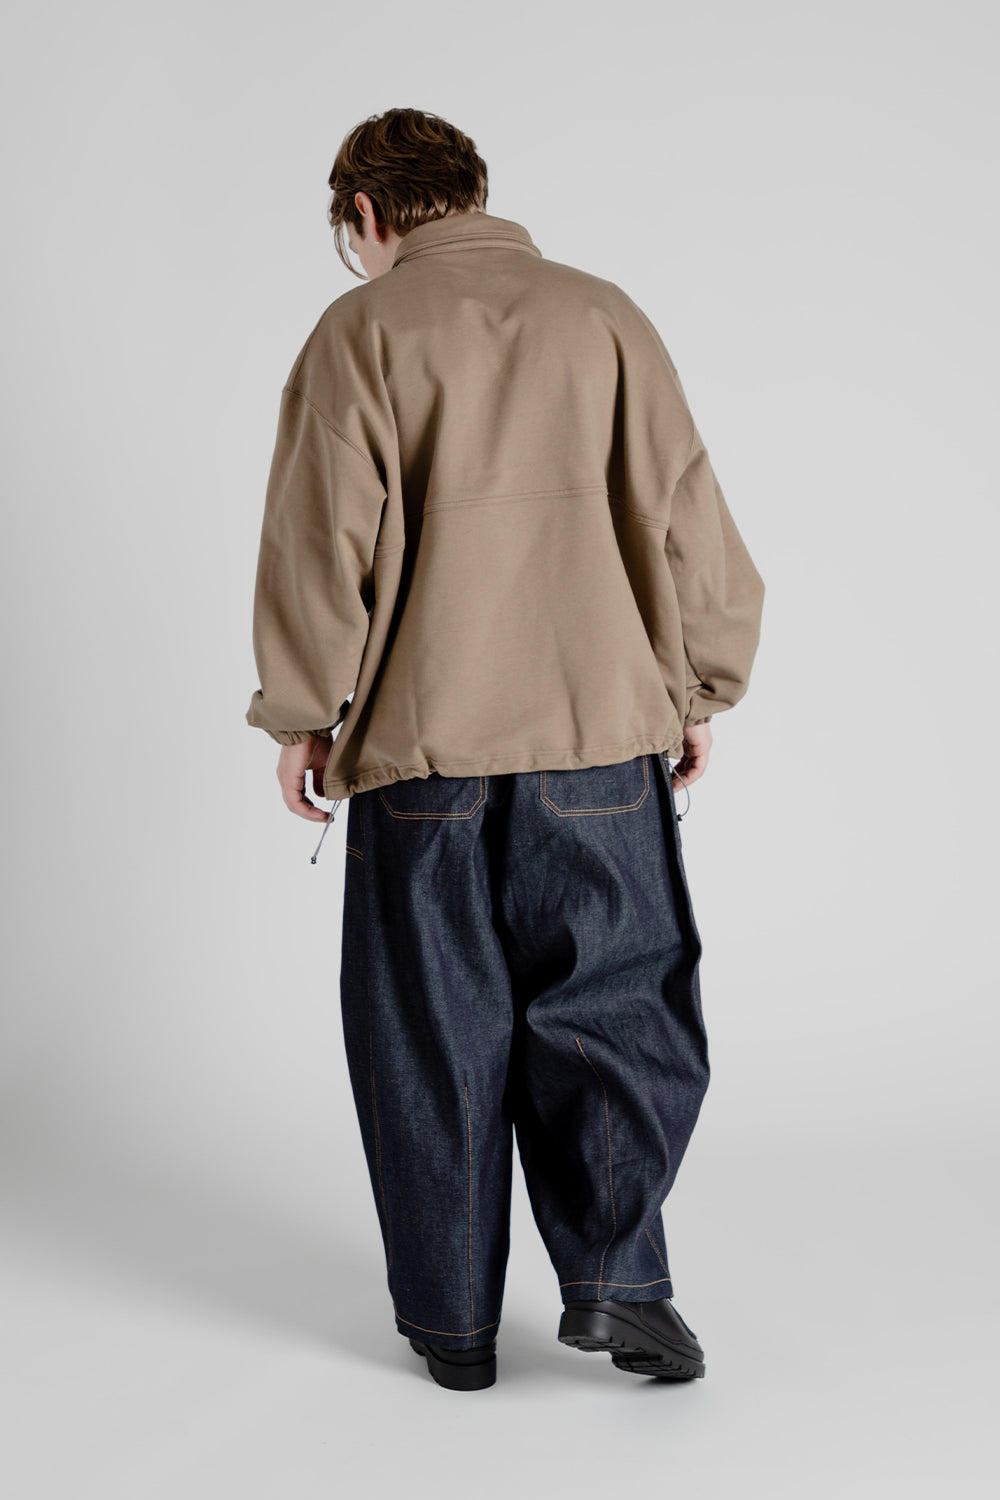 Is-Ness Pullover Sweatshirt in Light Brown